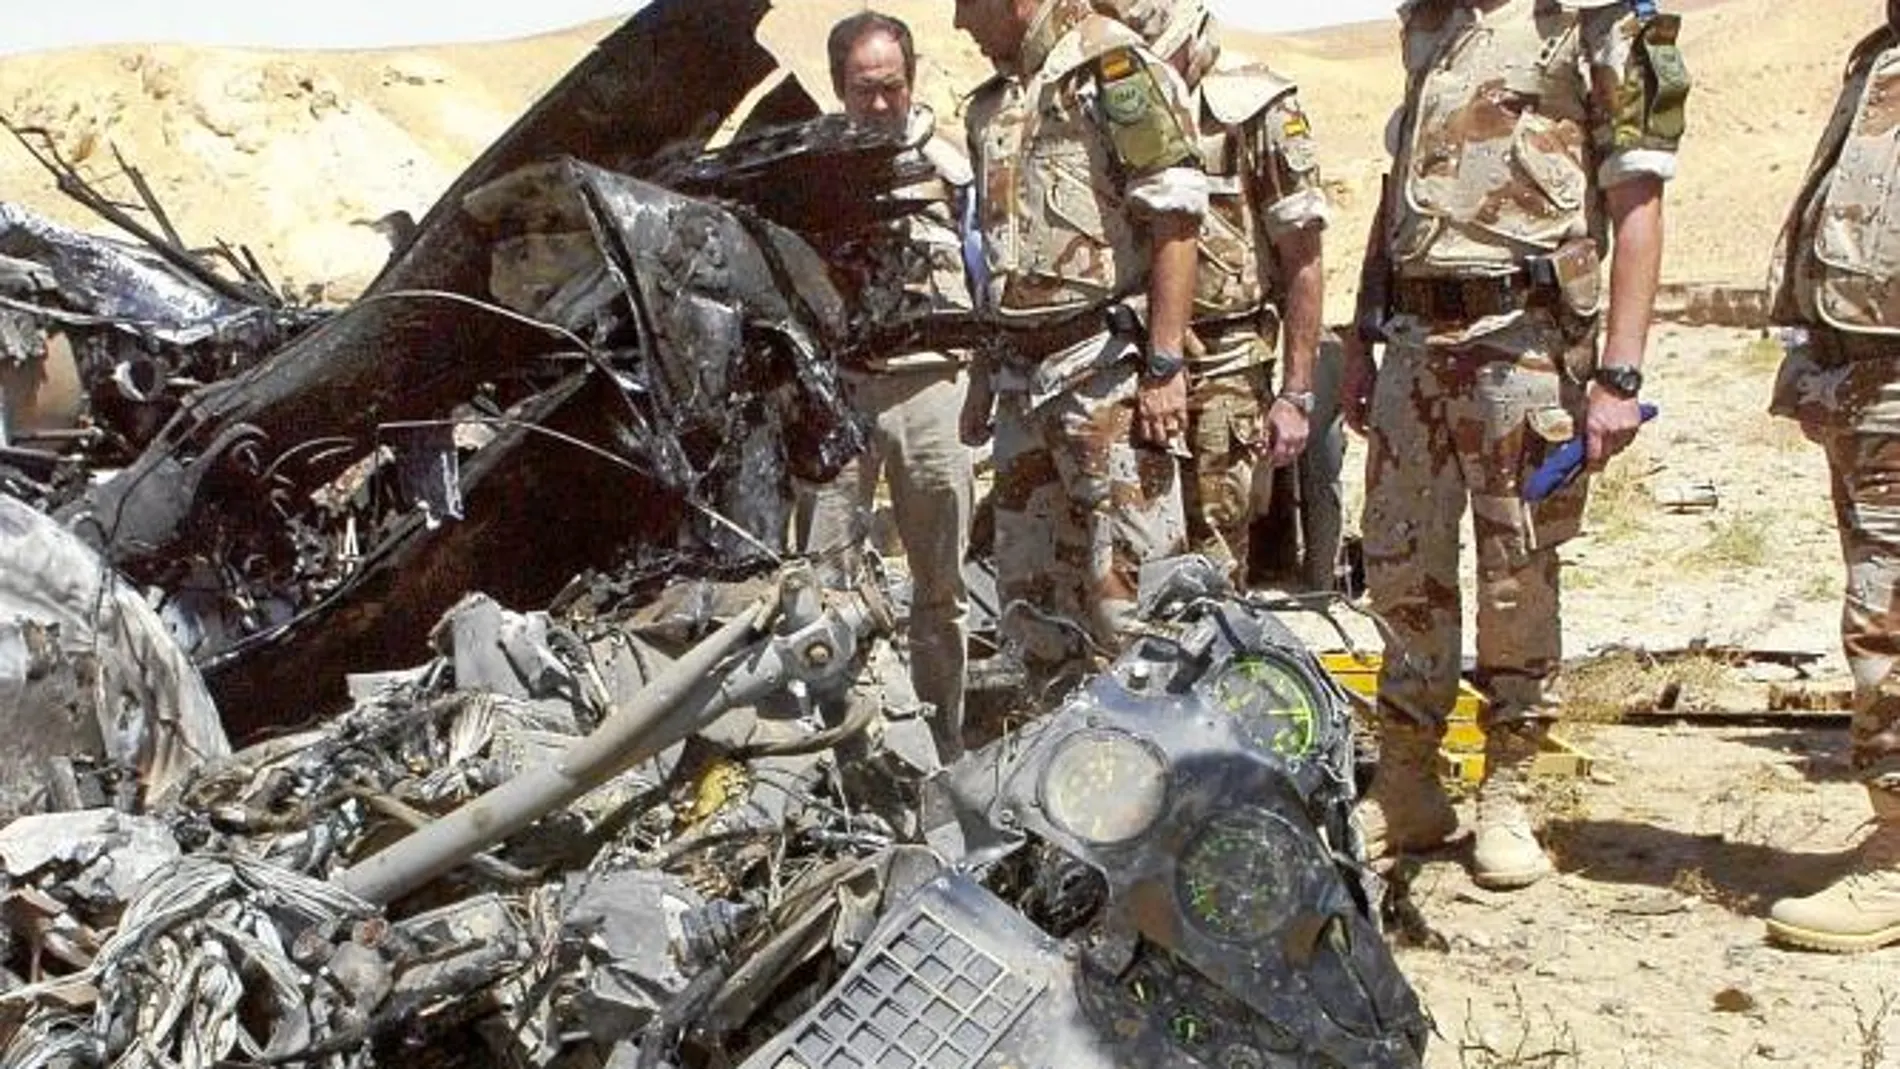 En el accidente del helicóptero «Cougar», ocurrido el 16 de agosto de 2005 en Afganistán fallecieron 17 militares españoles